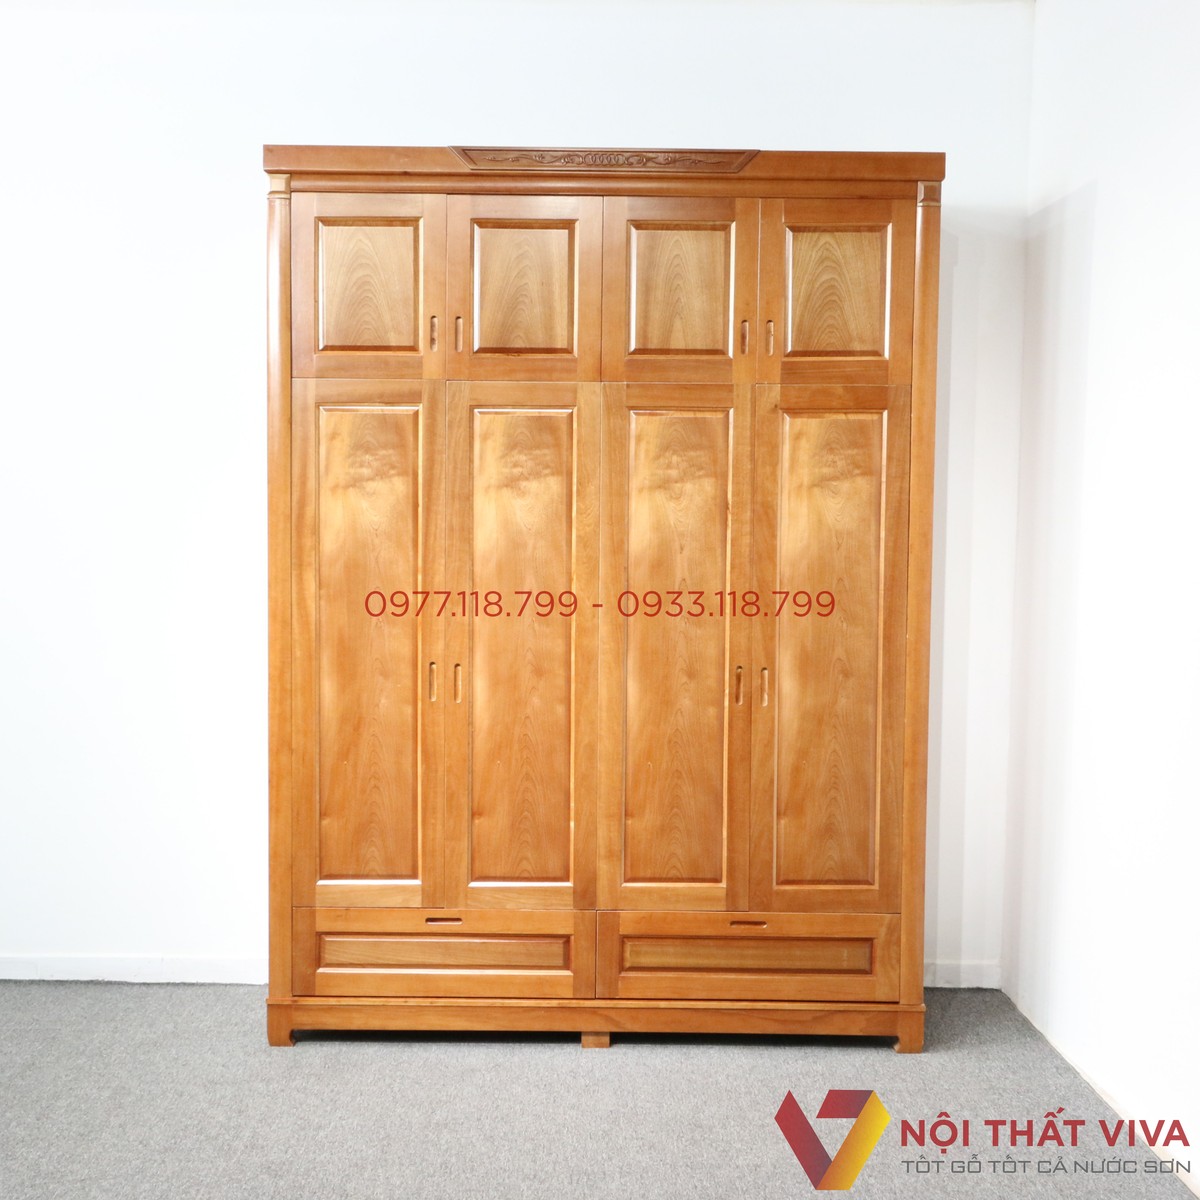 Top mẫu tủ quần áo đẹp bằng gỗ tự nhiên giá xưởng tại TP.HCM